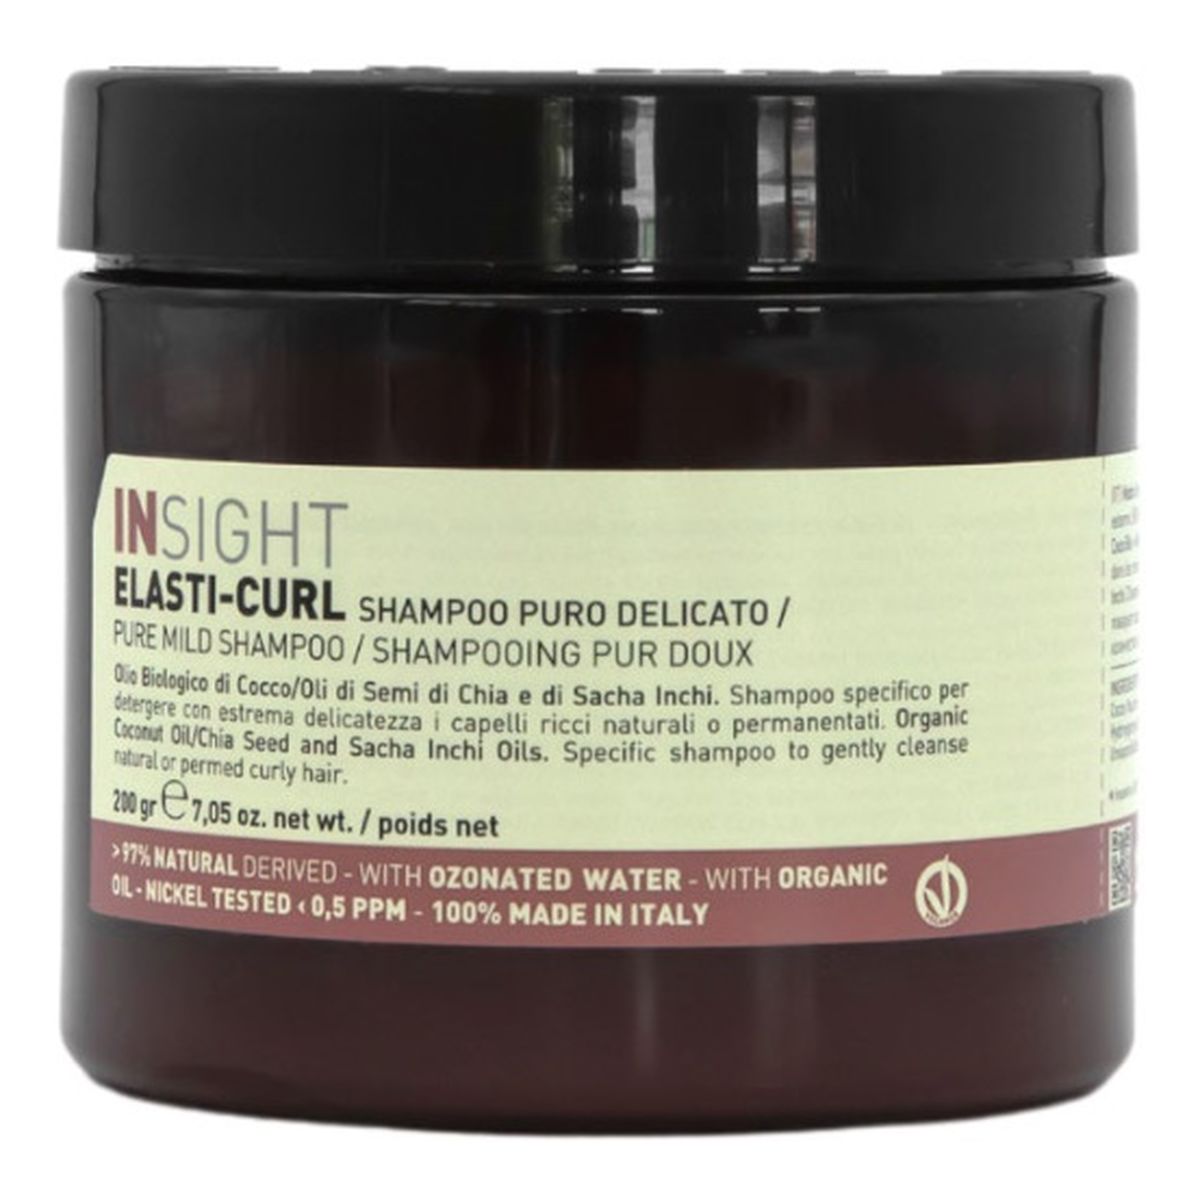 Insight Elasti-Curl delikatny szampon do włosów kręconych 200g 200g